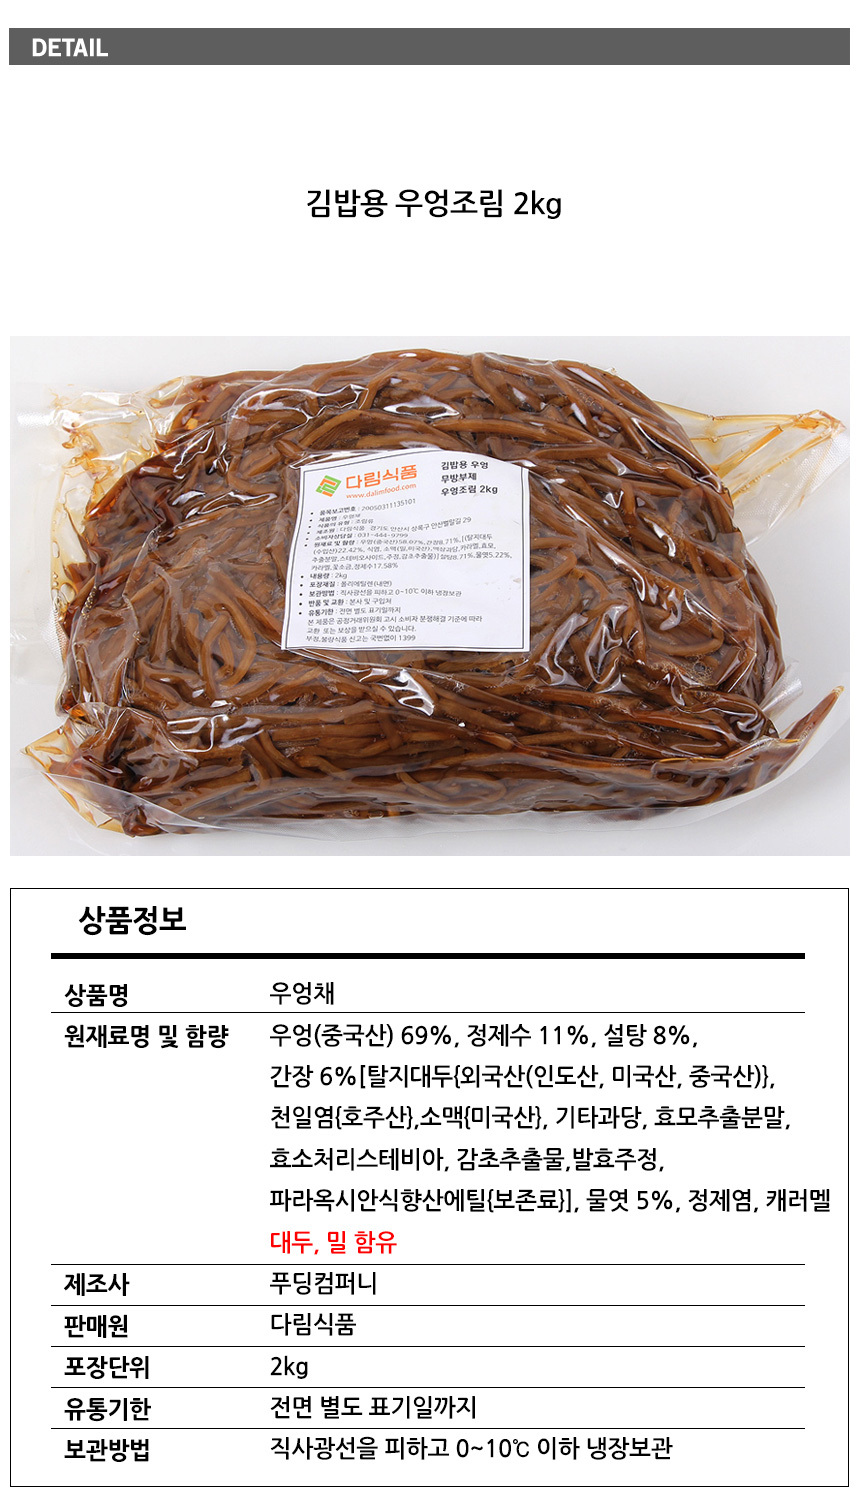 다림 김밥용 조림우엉2Kg/우엉채 - 다림죽